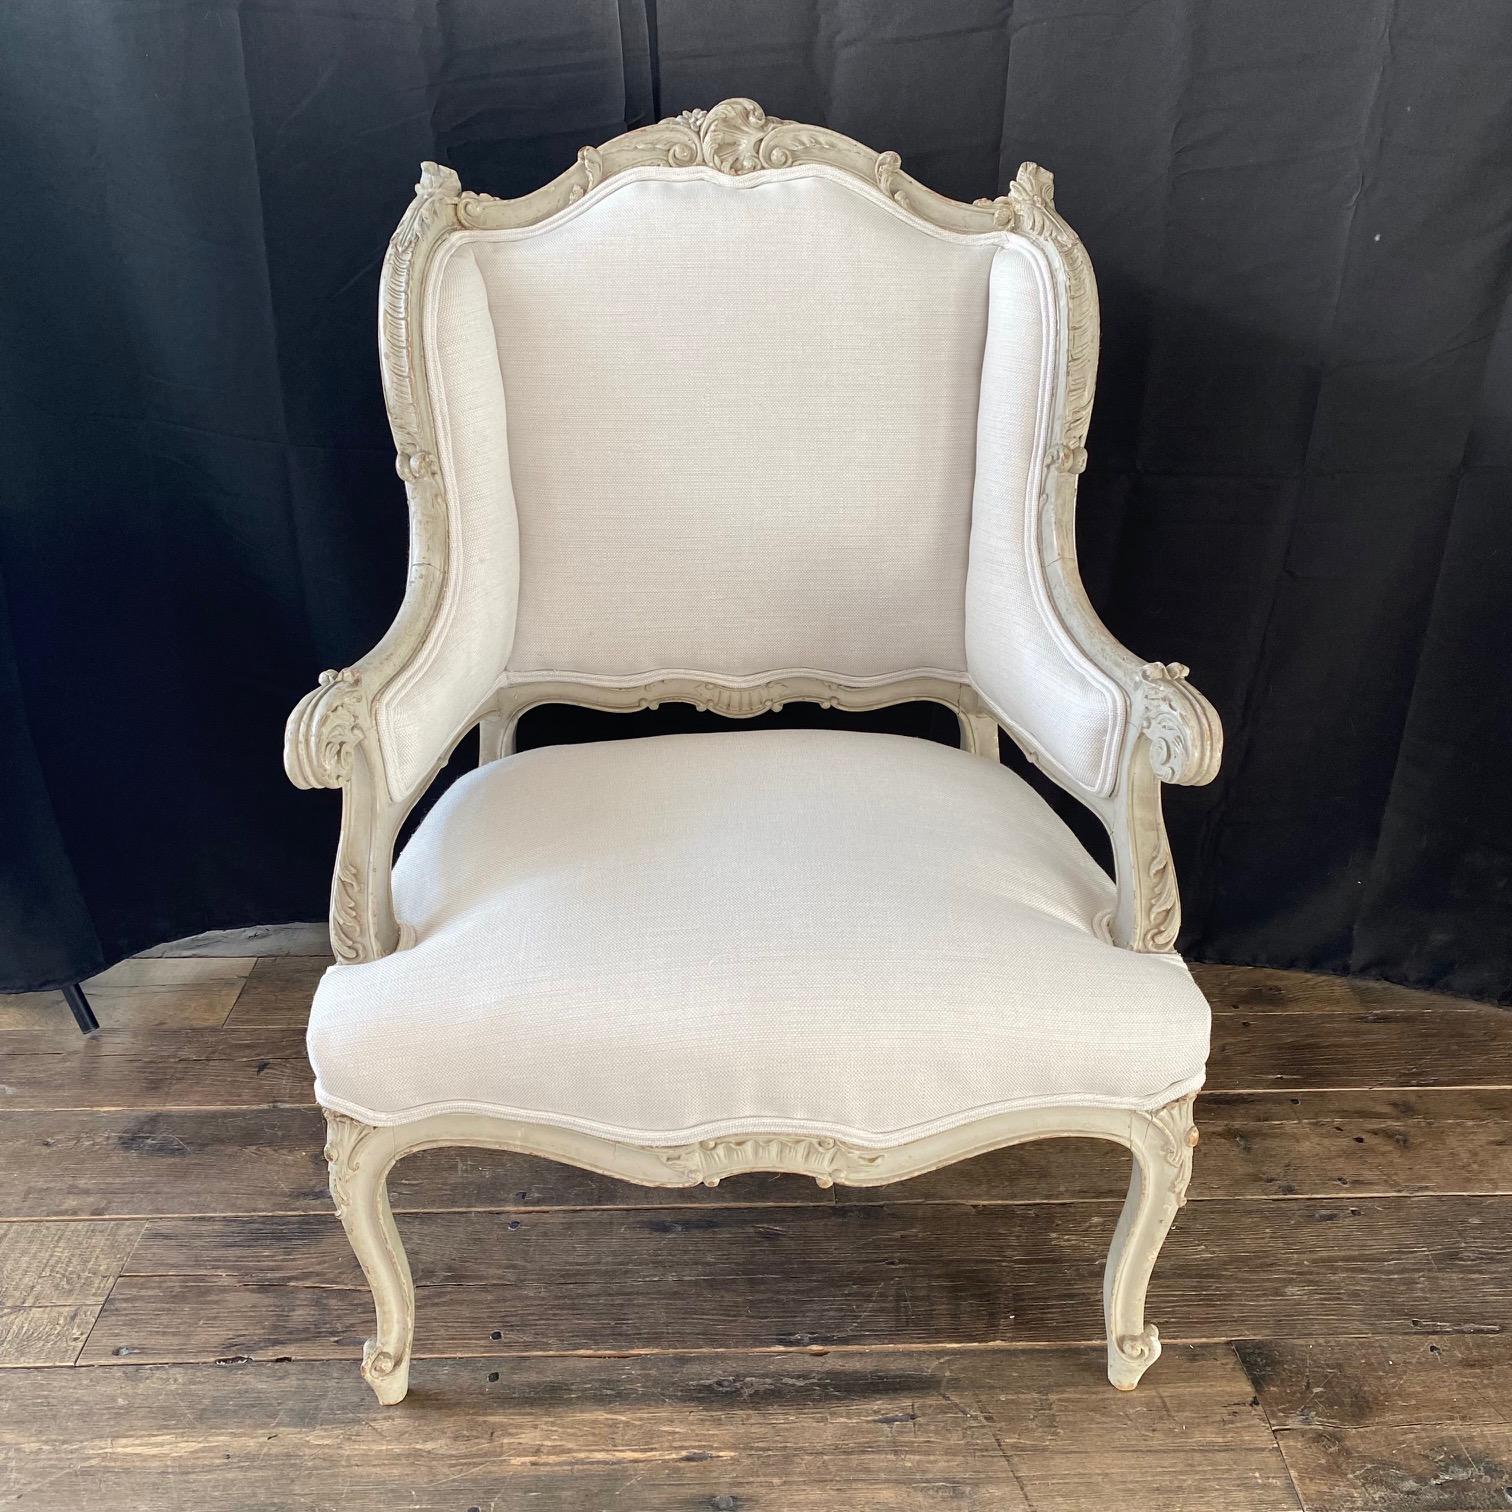 Atemberaubendes Paar bemalter und exquisit geschnitzter französischer Louis-XV-Sessel des 19. Jahrhunderts. Schöner Originalanstrich in blassem Grauweiß, mit neuer Polsterung in hochwertigem, komplementärem Neutralweiß mit einem Hauch desselben